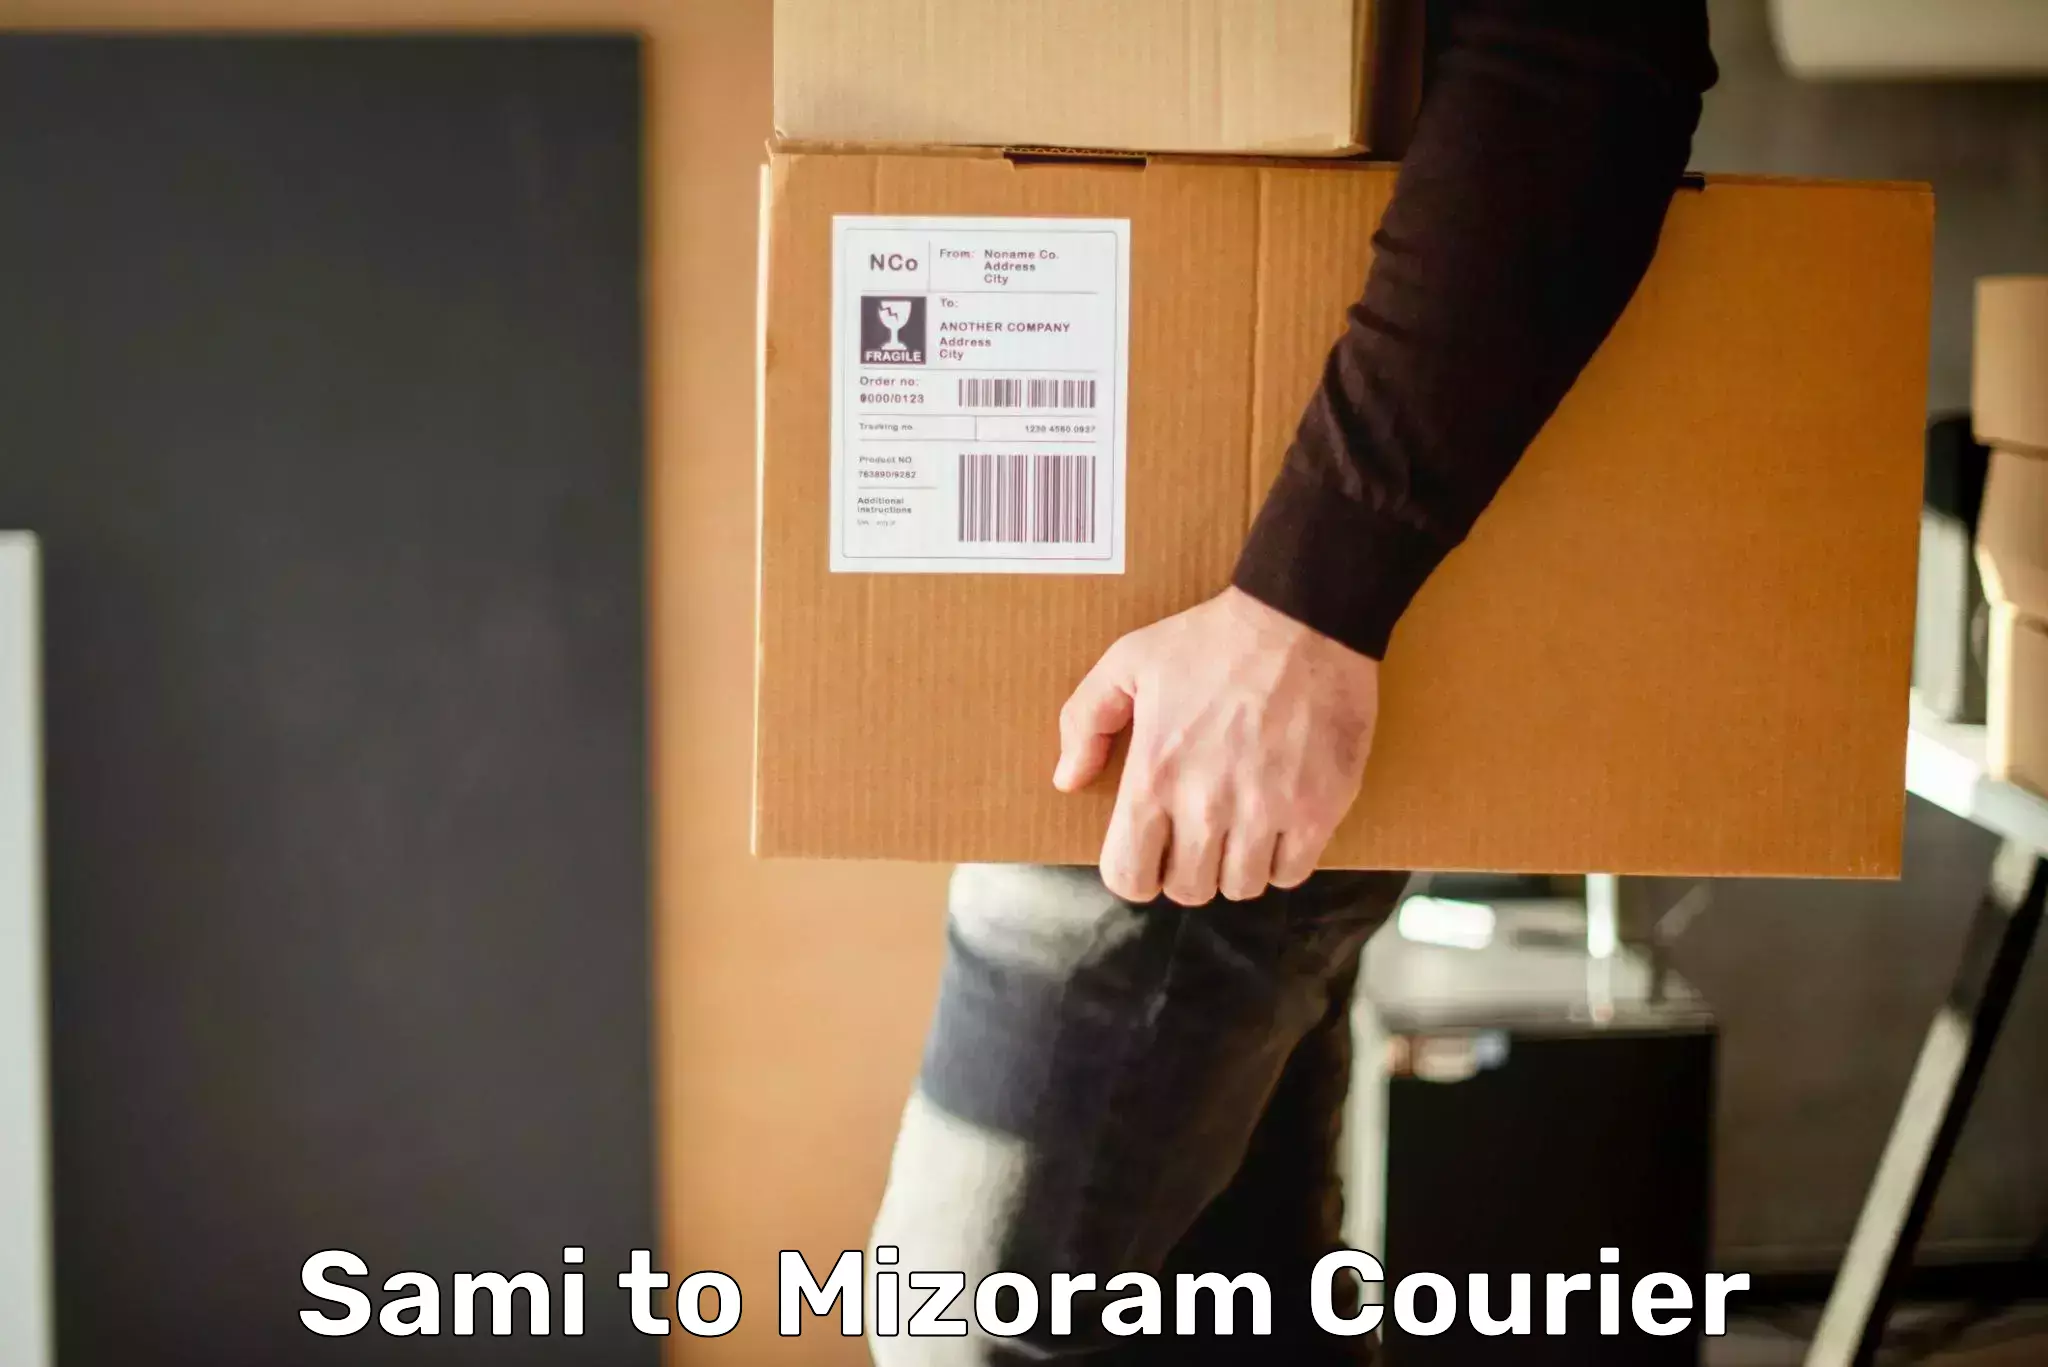 Express mail service Sami to Mizoram